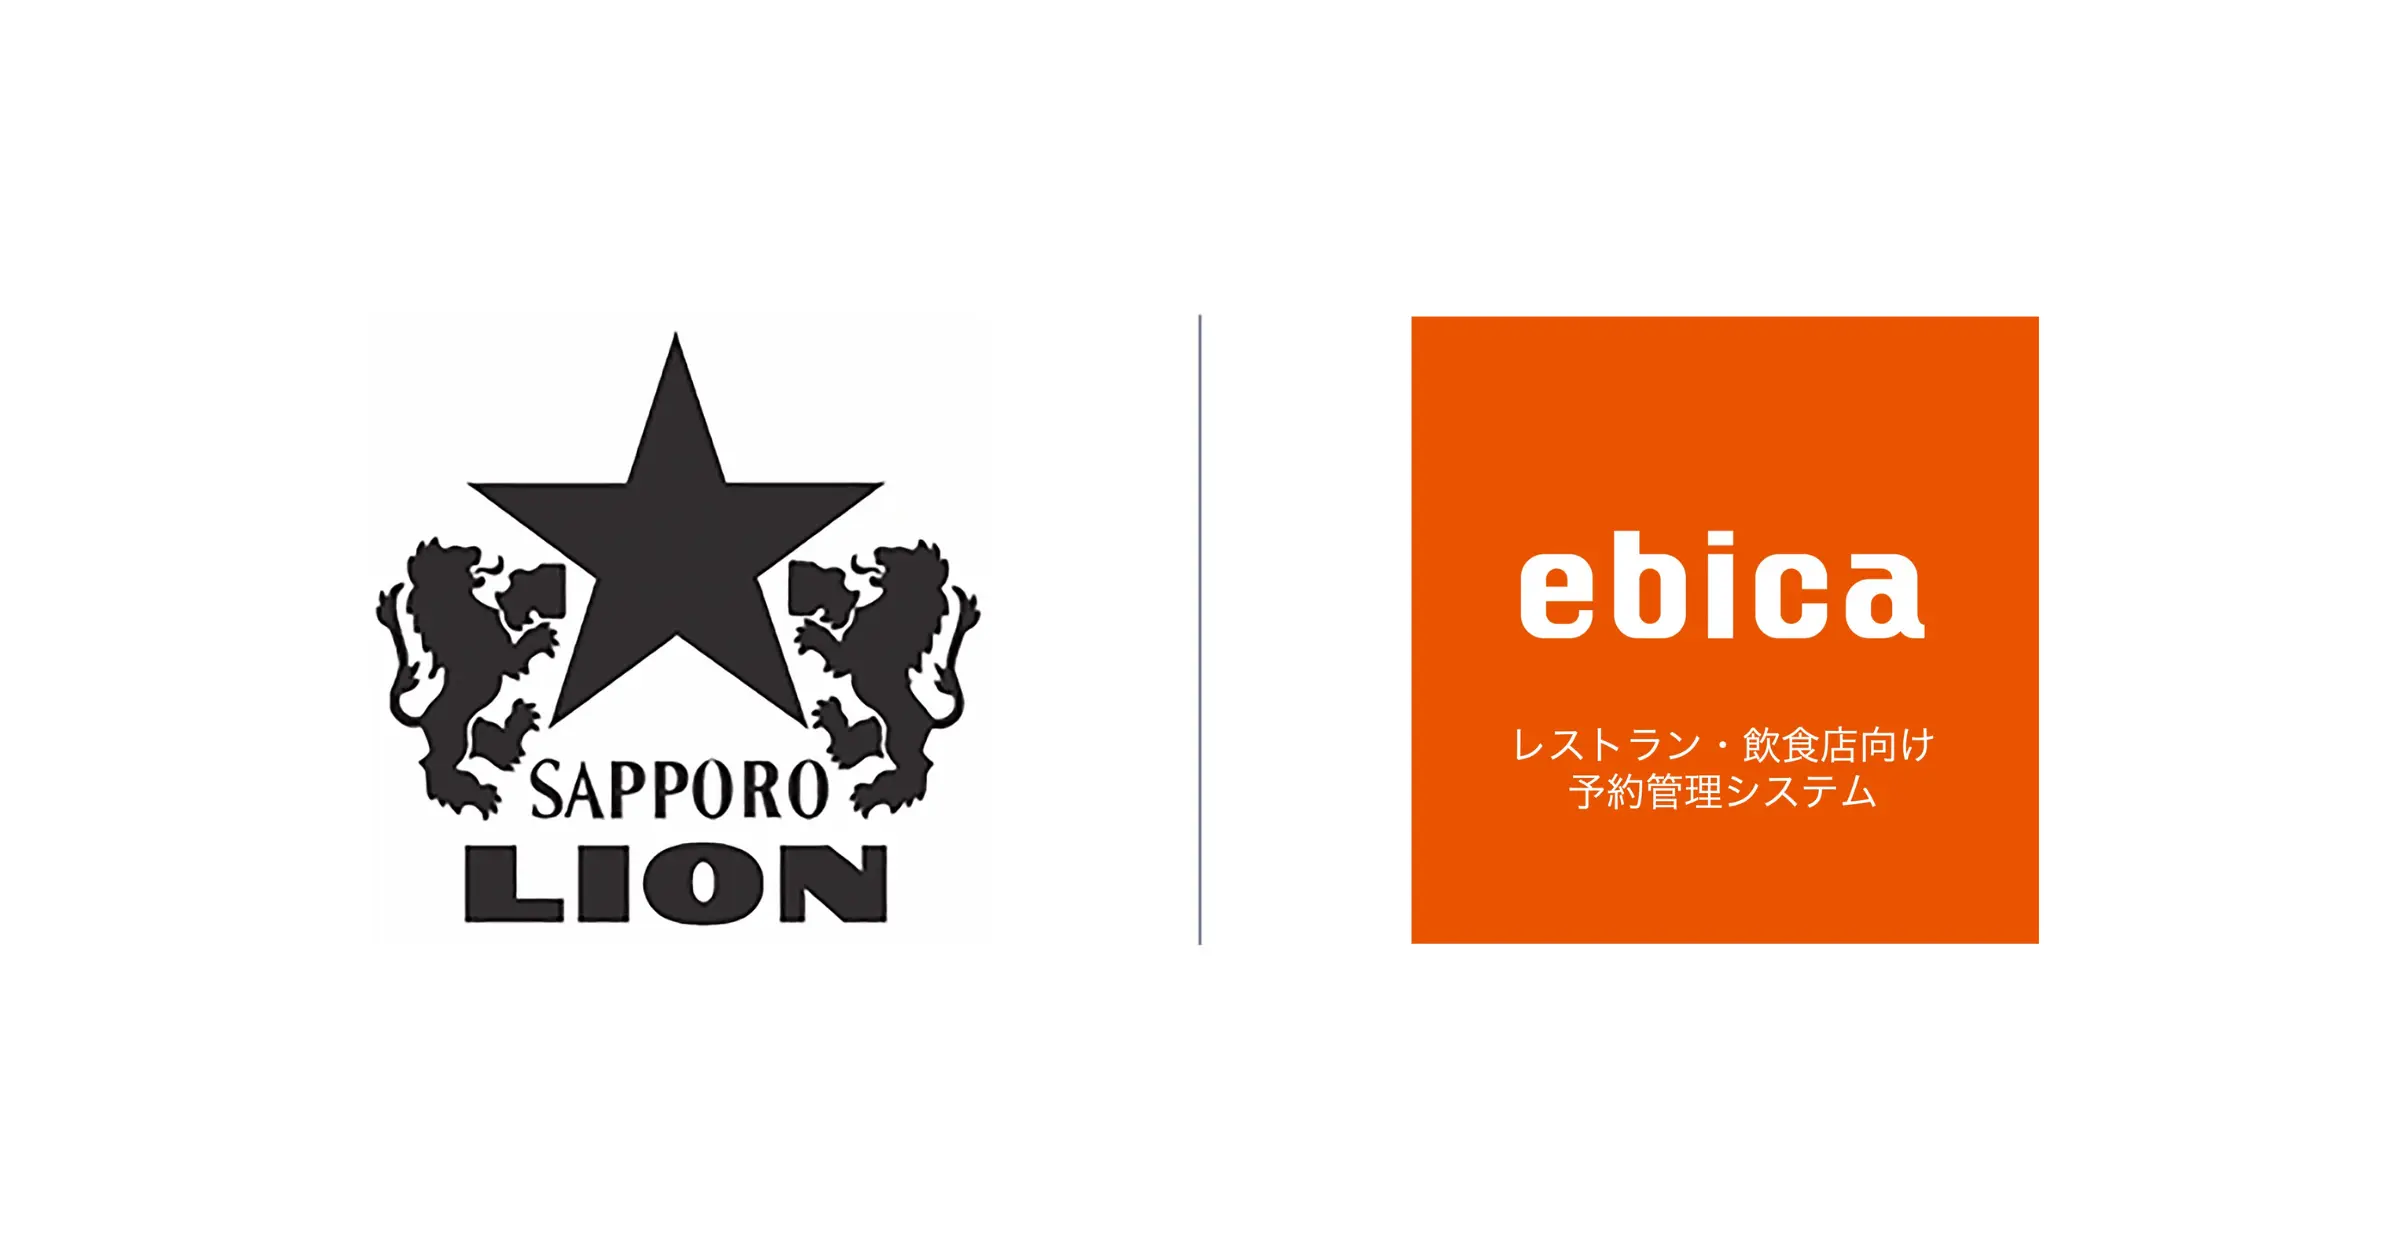 「銀座ライオン」や「ヱビスバー」を展開するサッポロライオンが、予約業態全84店舗に「ebica」を導入